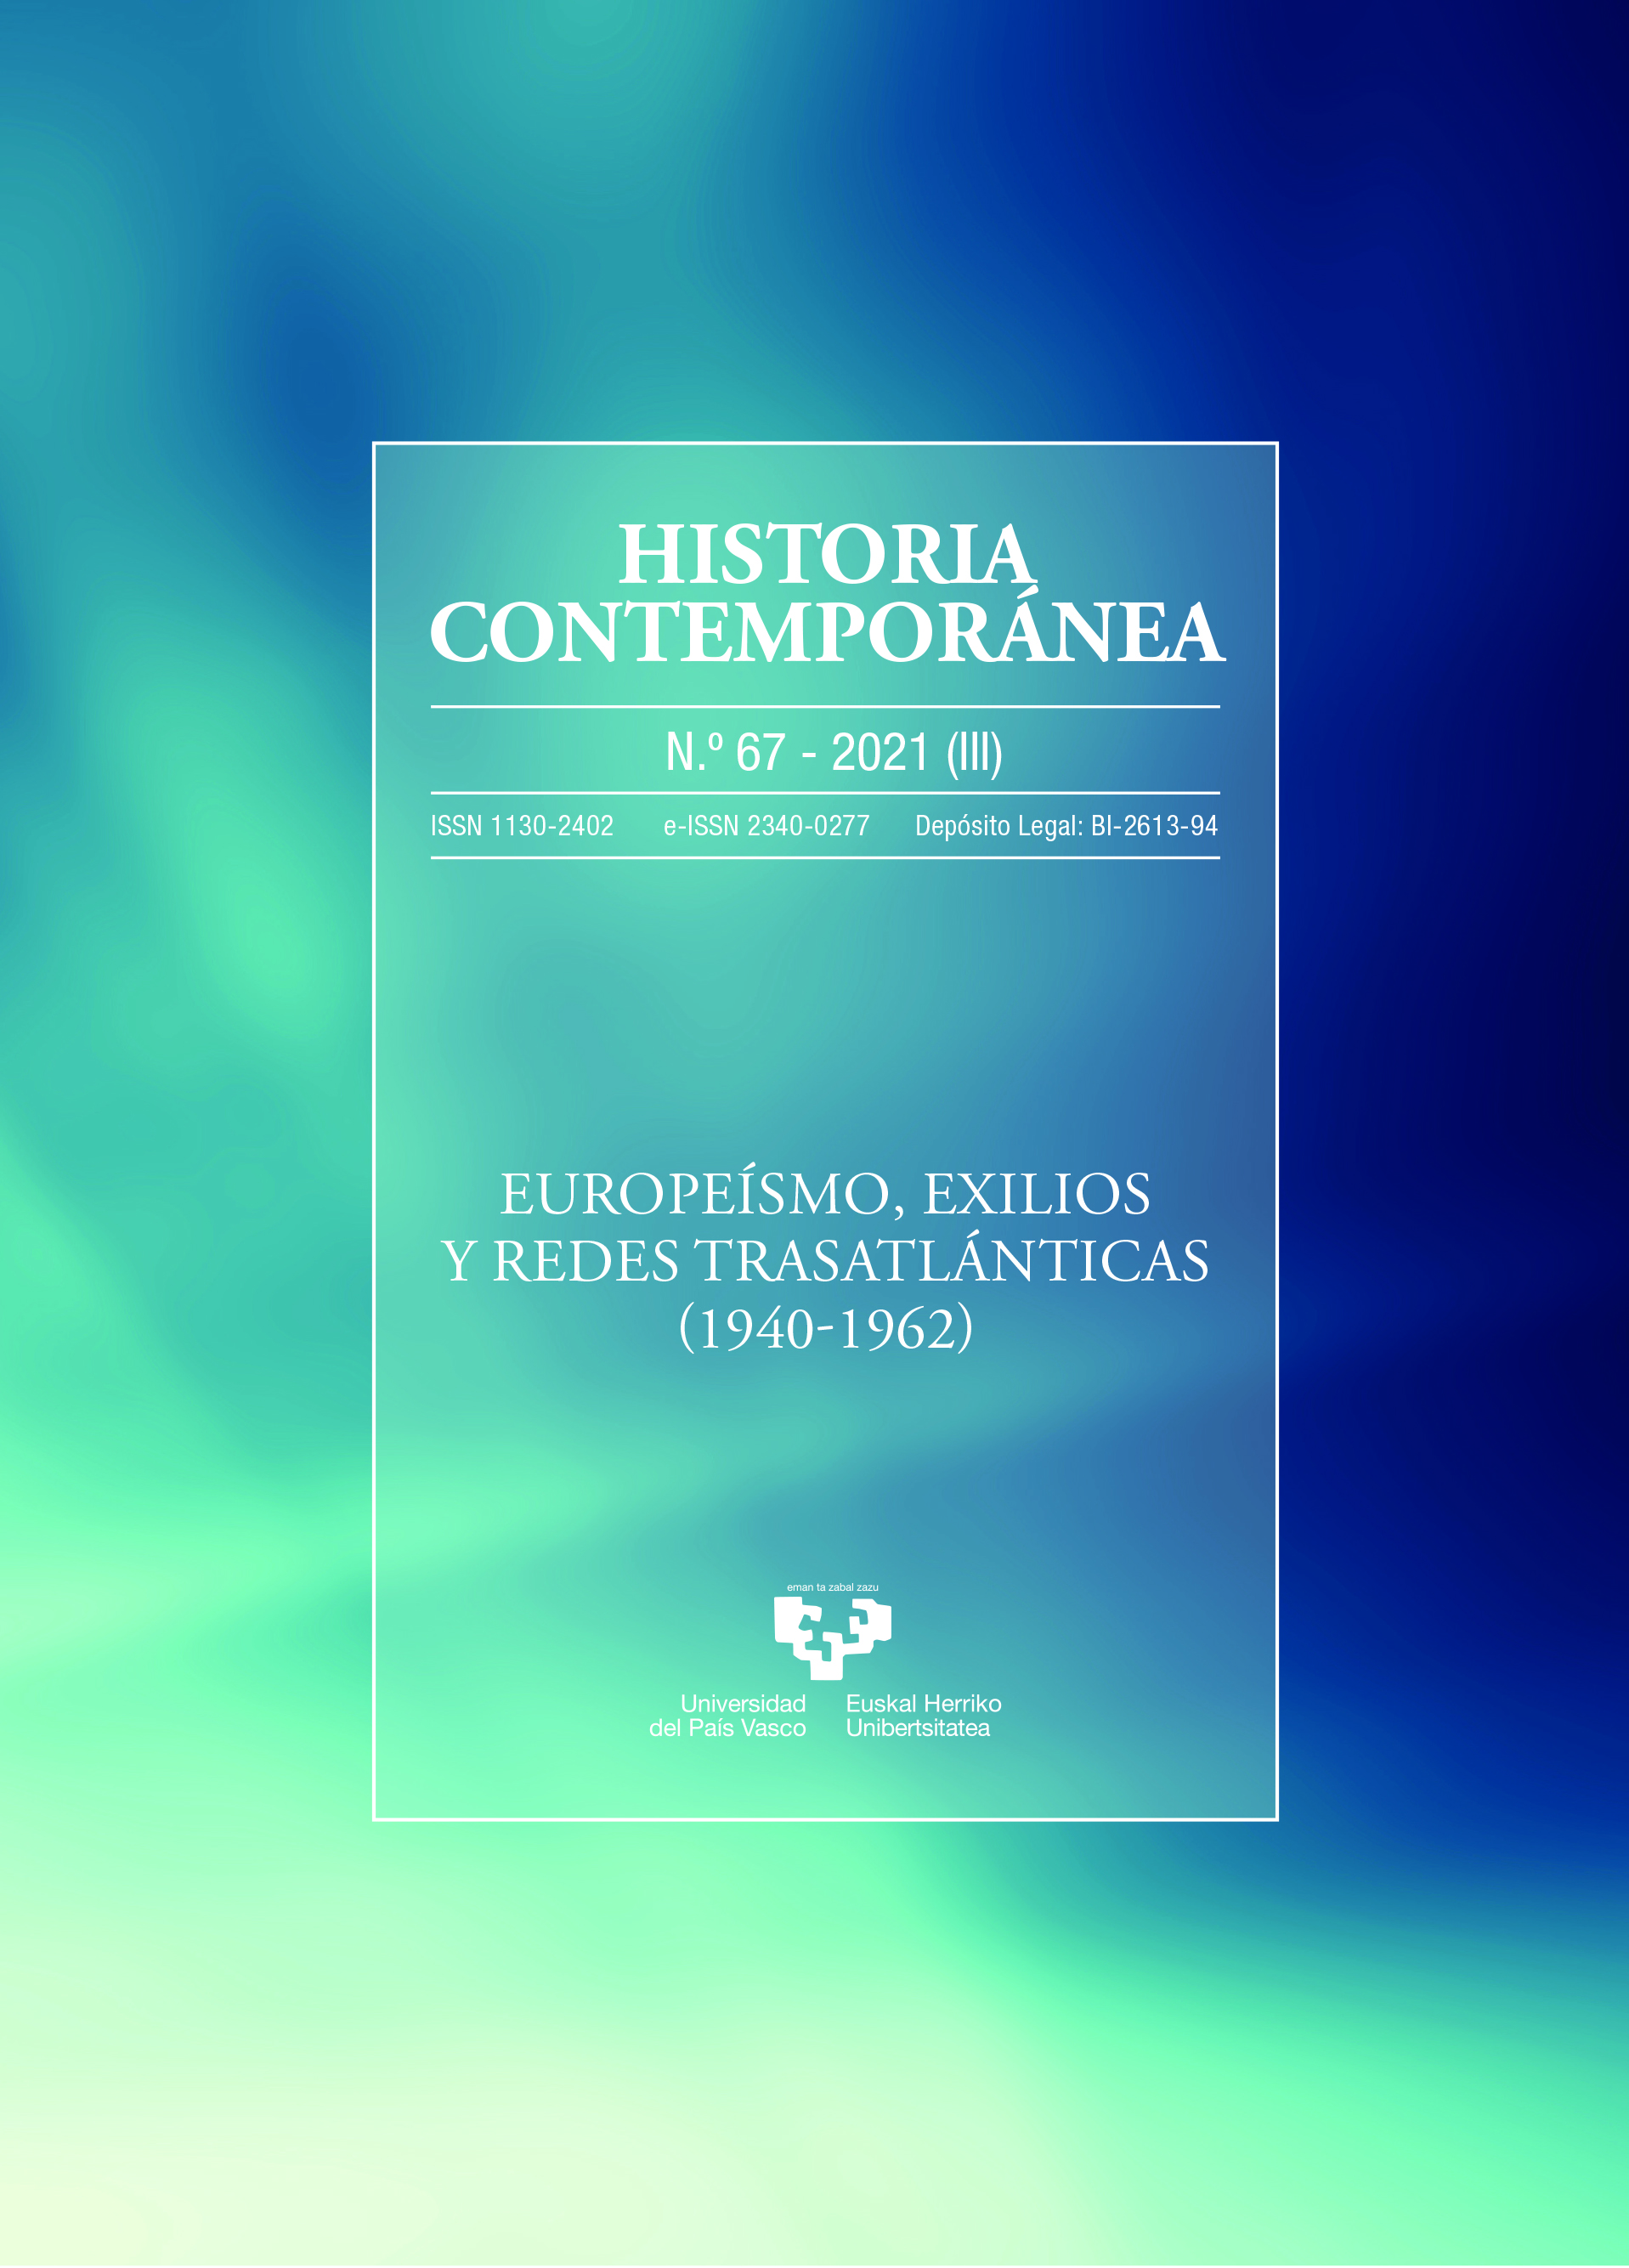 Europeísmo, exilios y redes transatlánticas (1940-1962)